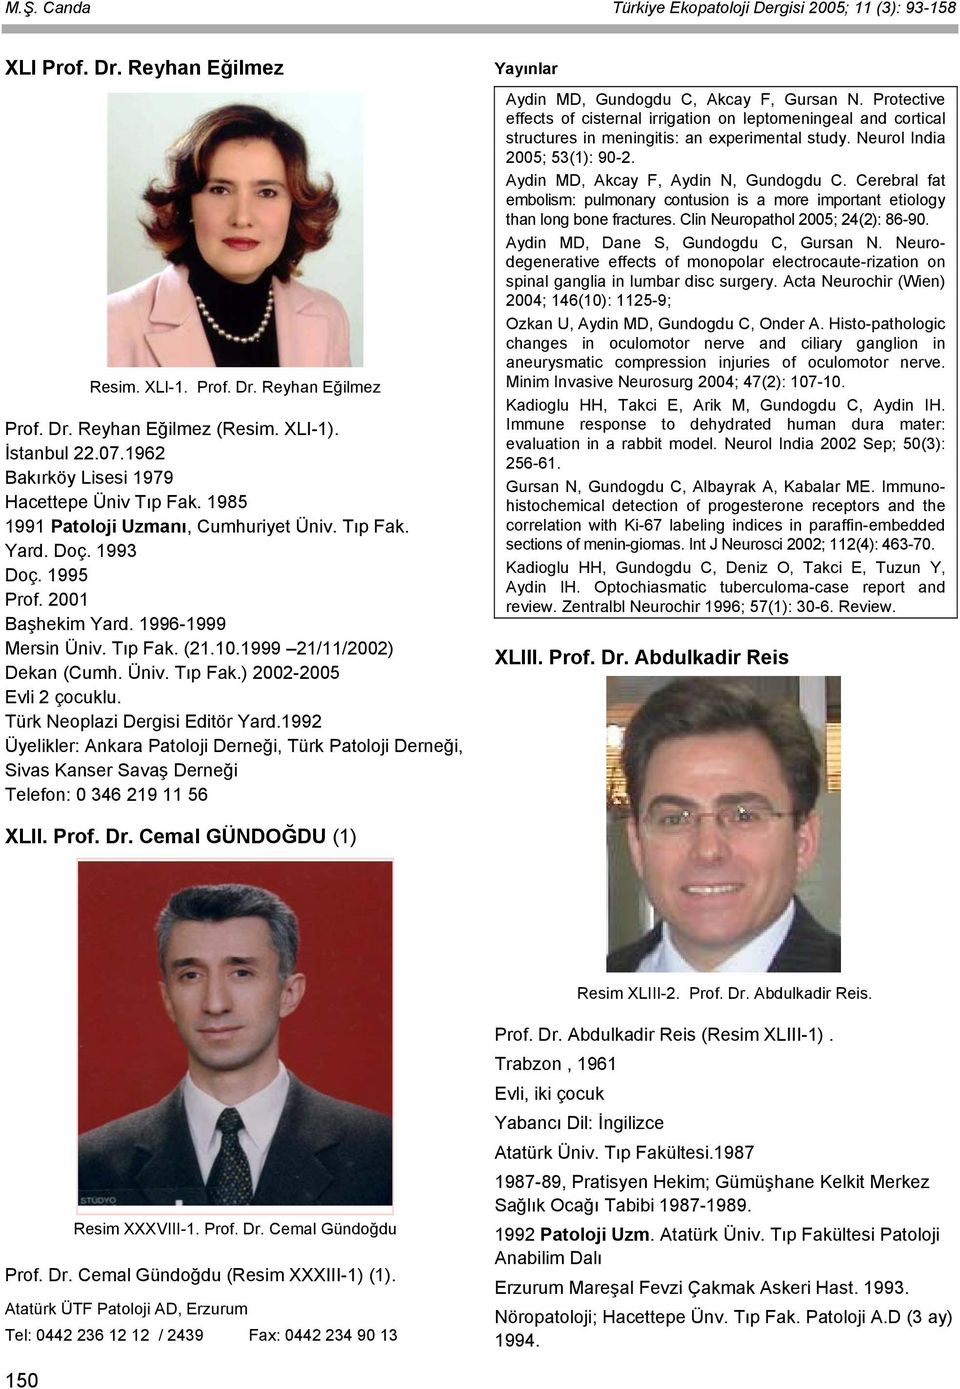 1999 21/11/2002) Dekan (Cumh. Üniv. Tıp Fak.) 2002-2005 Evli 2 çocuklu. Türk Neoplazi Dergisi Editör Yard.